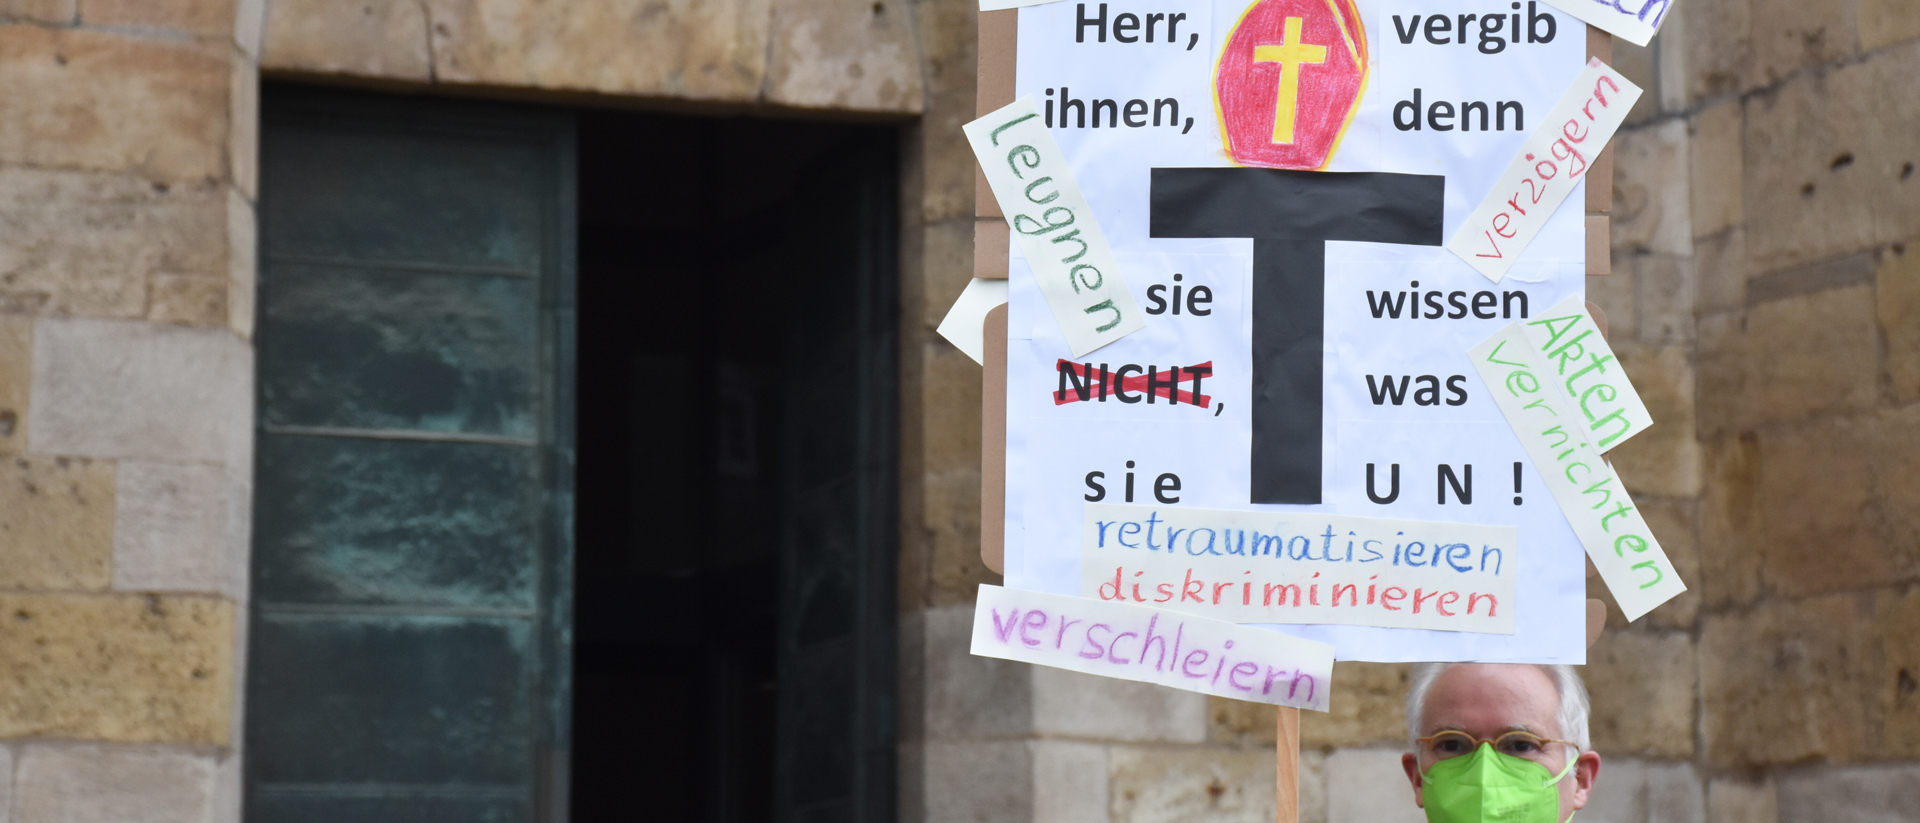 Demonstration des Vereins "Missbrauchsopfer im Bistum Trier" (Missbit).